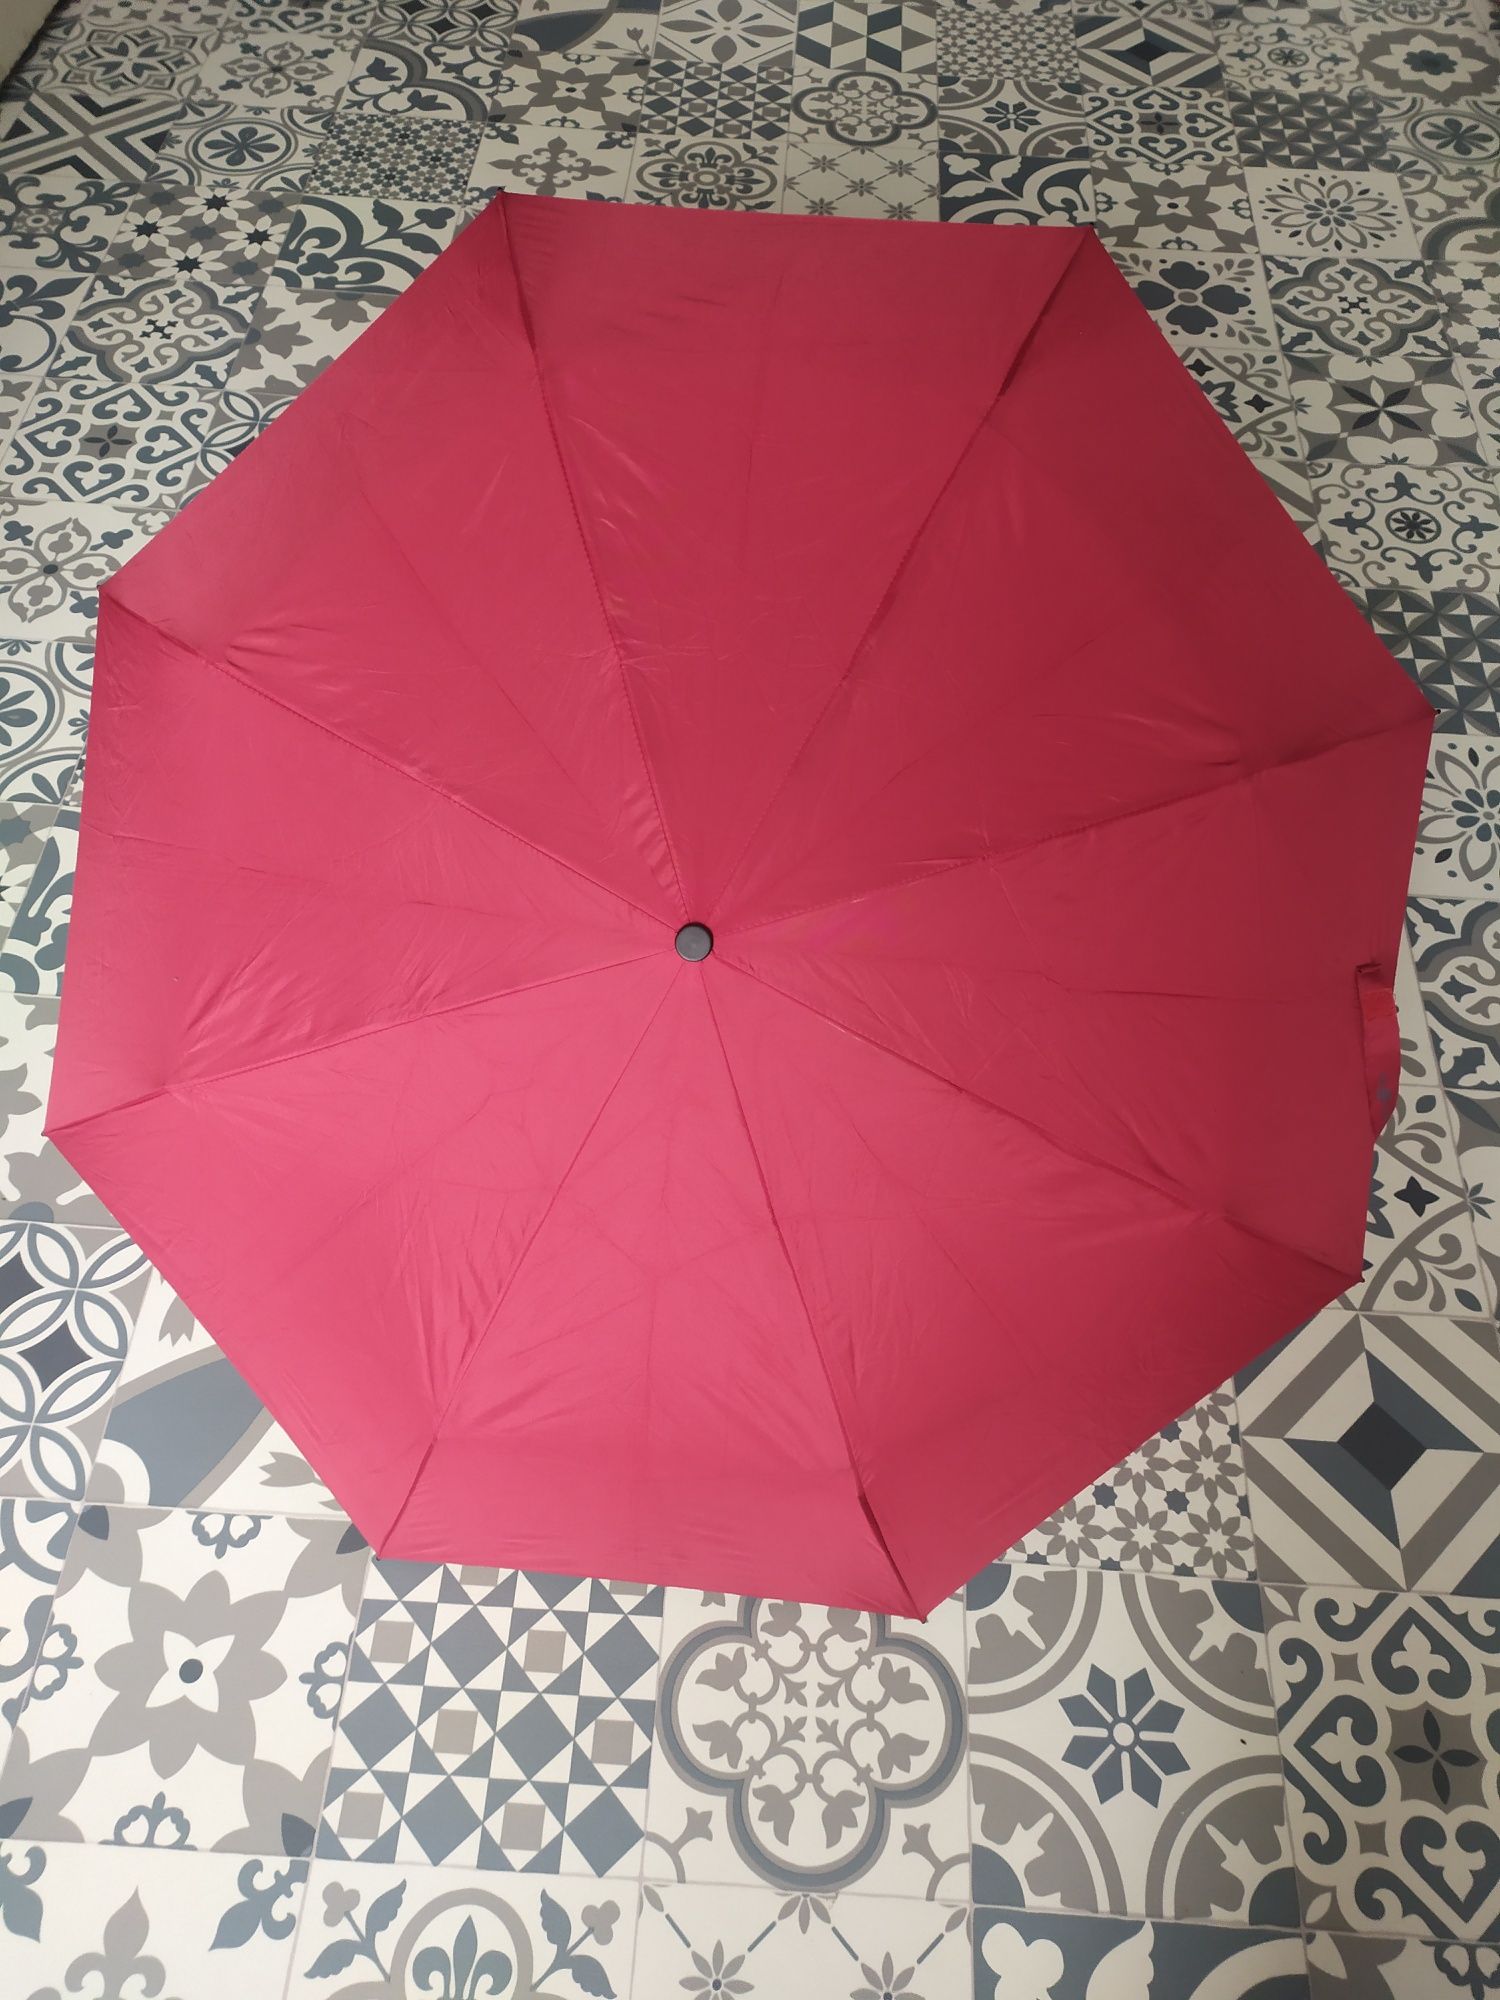 Czerwona parasolka parasol składana mała